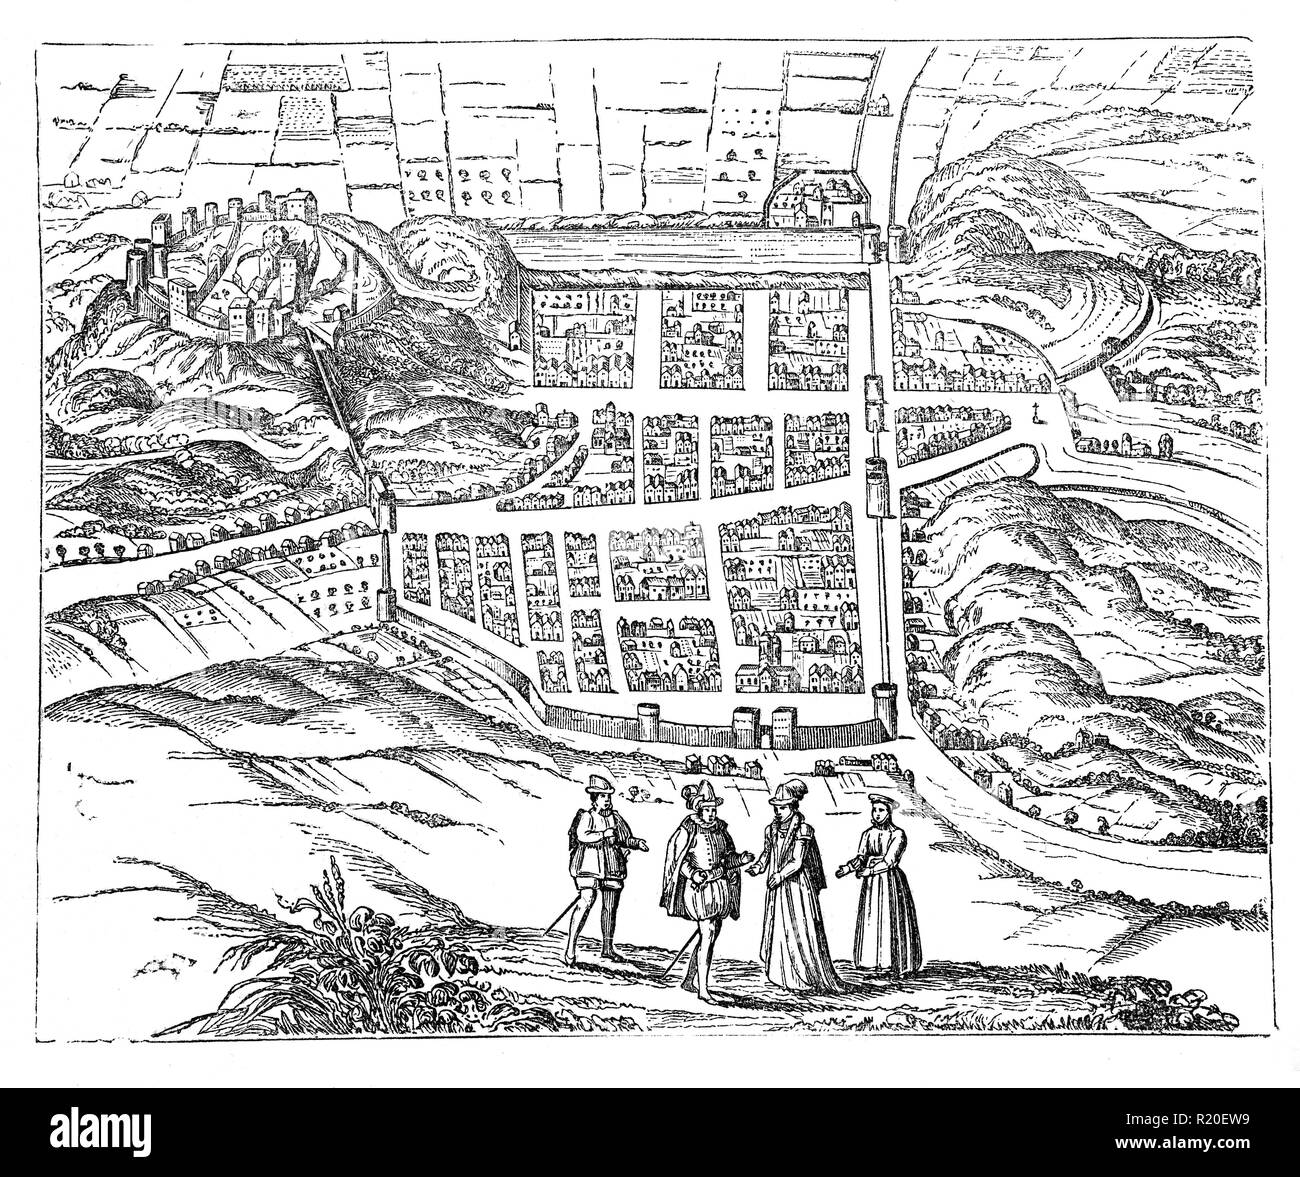 Una mappa di Edimburgo nel XVII secolo quando crebbe in dimensioni e prosperità. Questo nonostante i focolai di peste nel 1604 e 1645. Nel frattempo nel 1621 tetti in paglia sono state vietate in Edinburgh come fossero un pericolo di incendio. Foto Stock